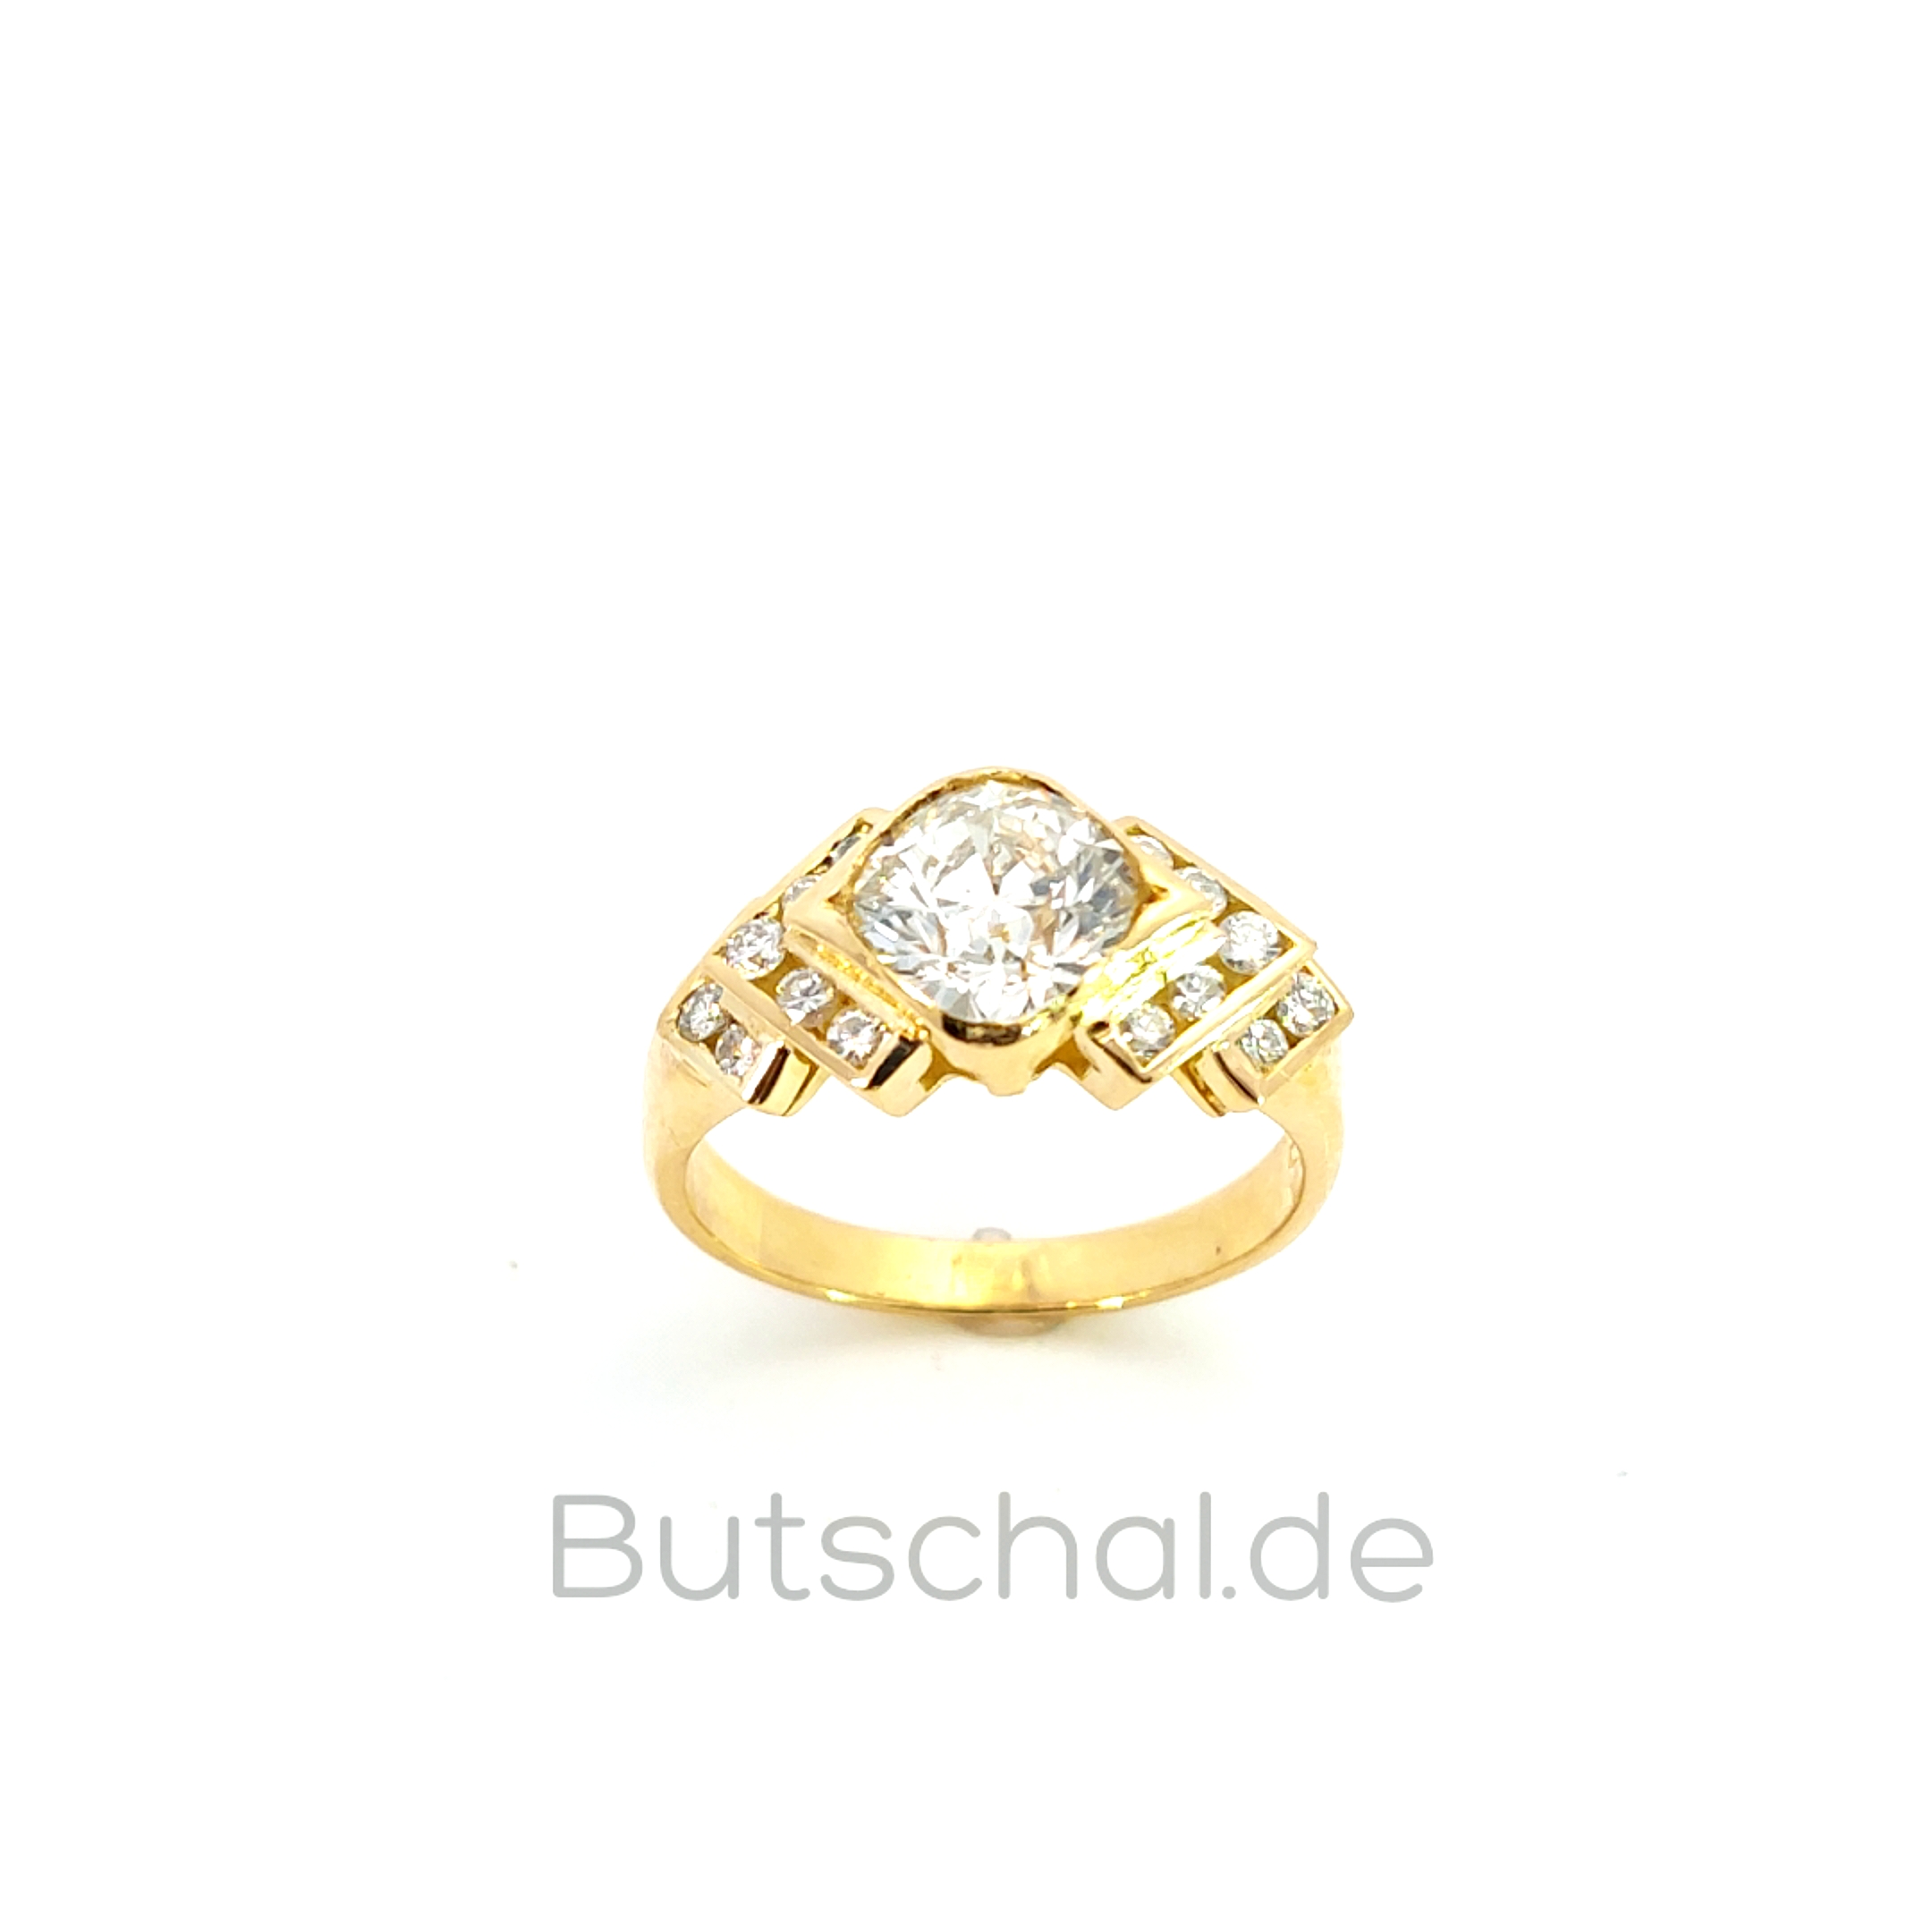 Weissgold Brillantring als Bandring in 18 kt mit 1,57ct Brillant | Diamantring